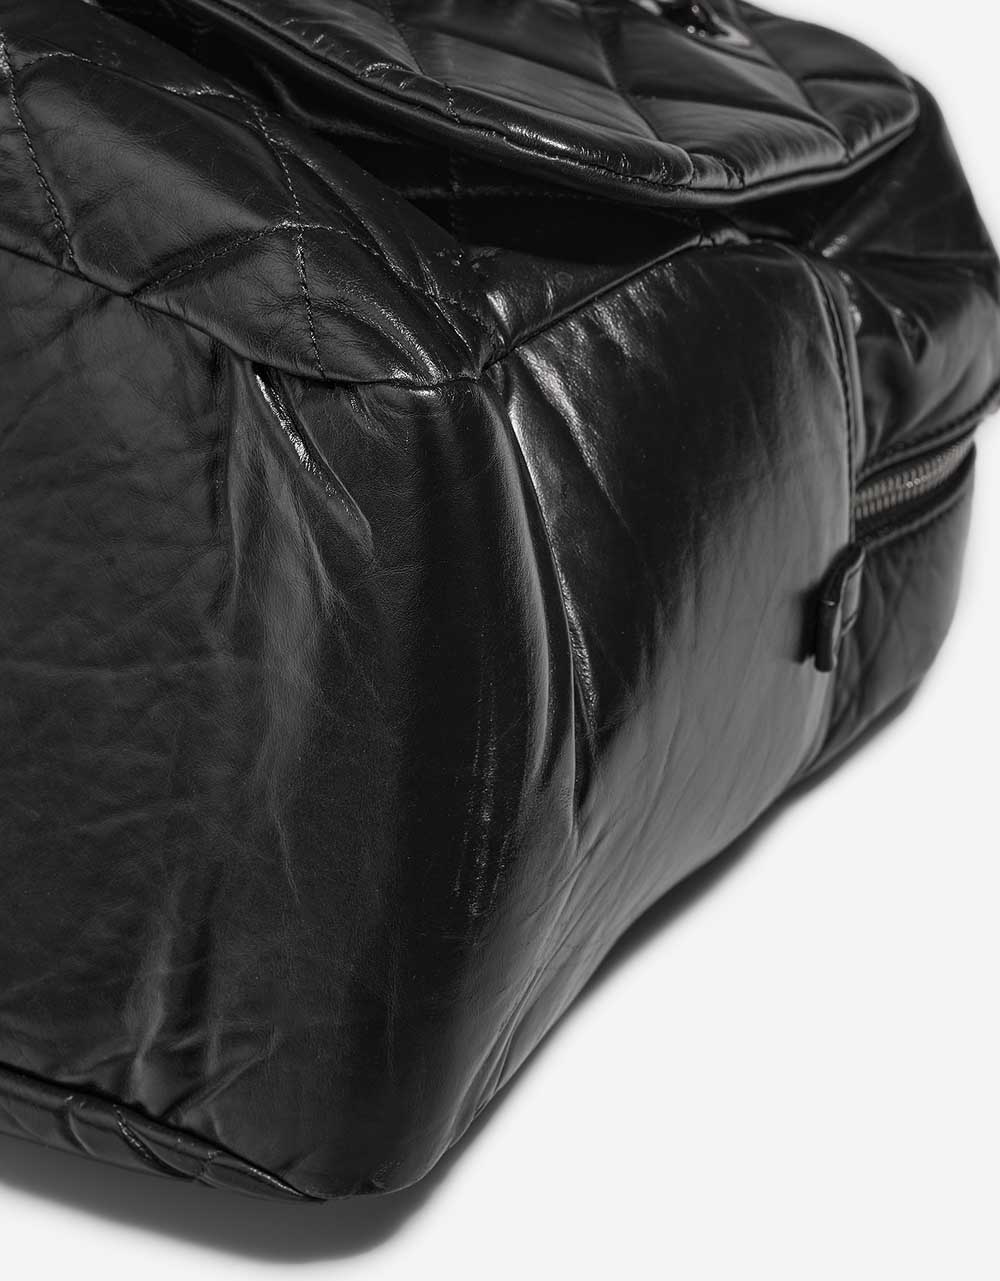 Chanel ExpressBowling Black Gebrauchsspuren | Verkaufen Sie Ihre Designer-Tasche auf Saclab.com